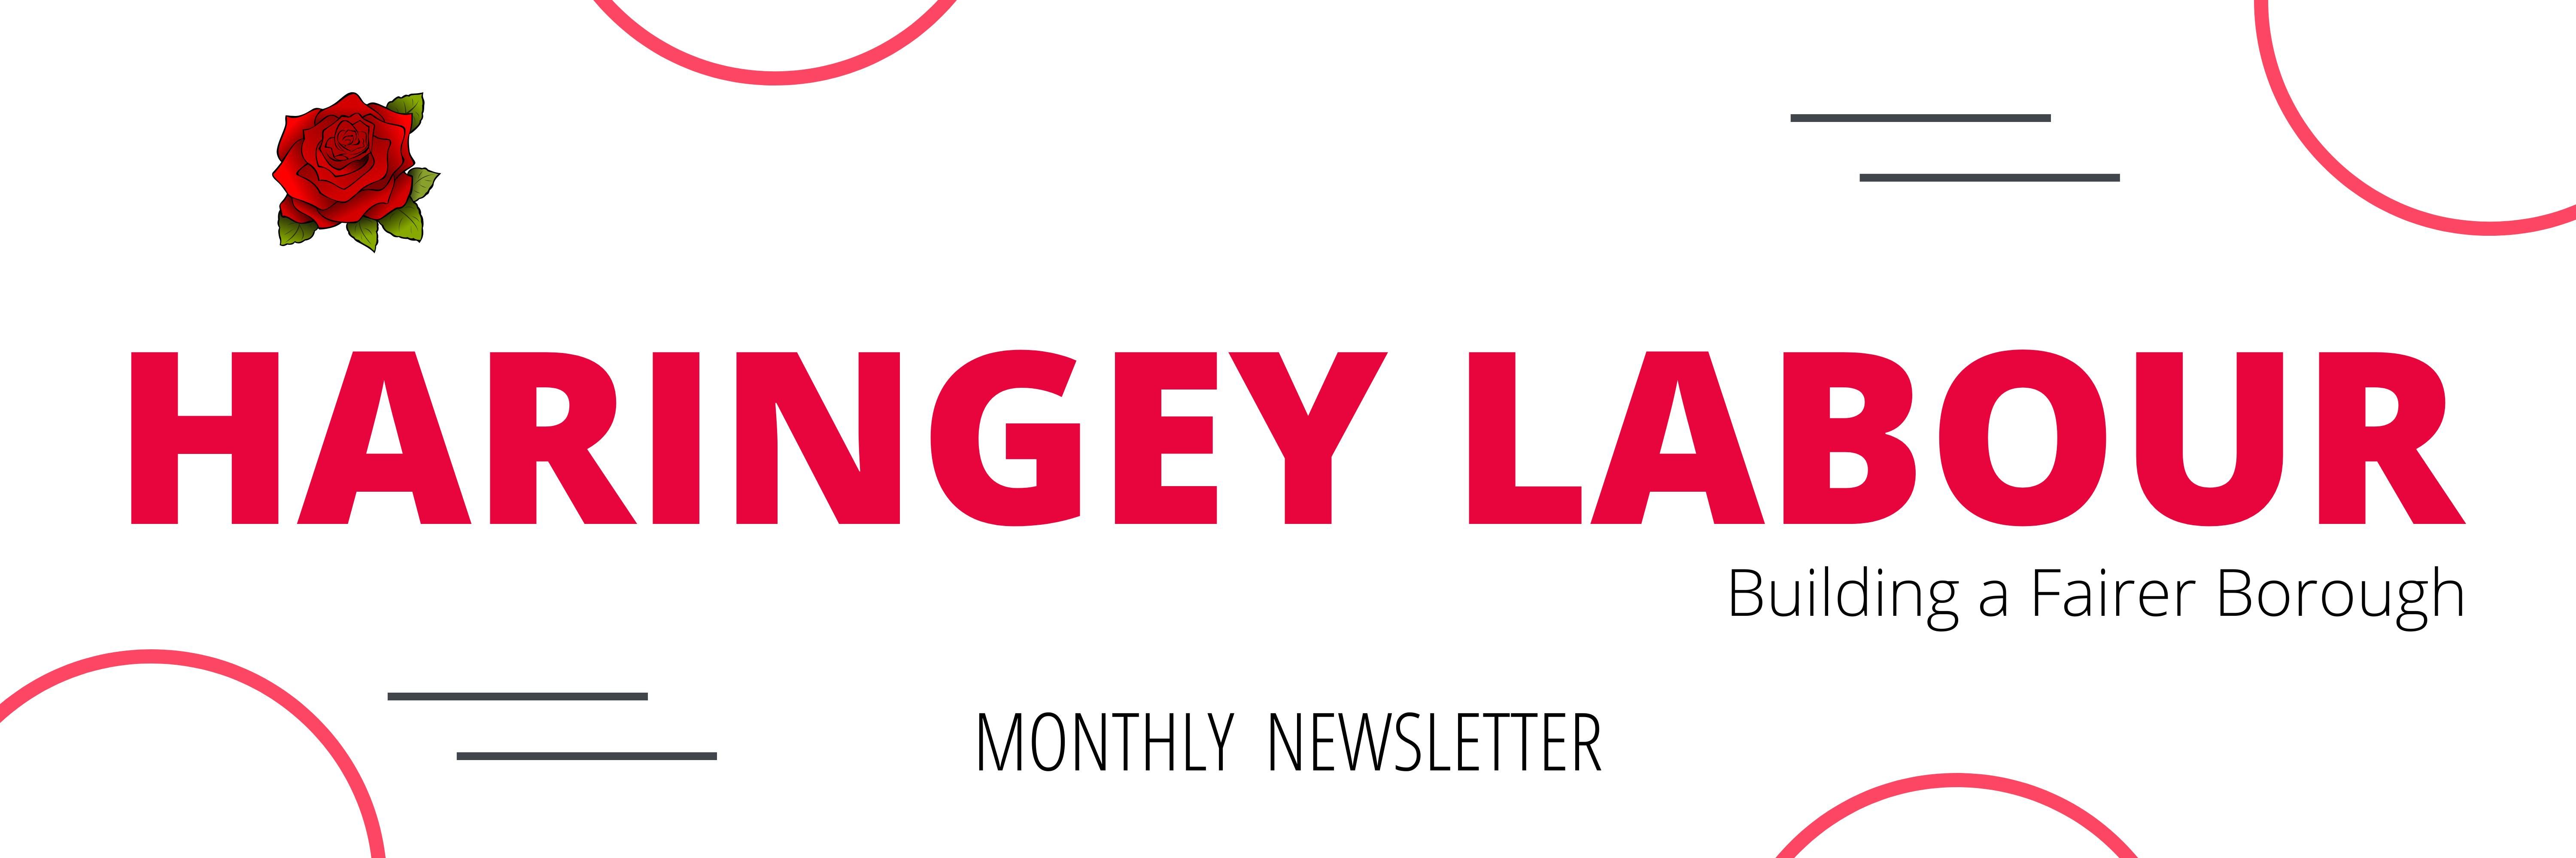 Haringey Labour Newsletter